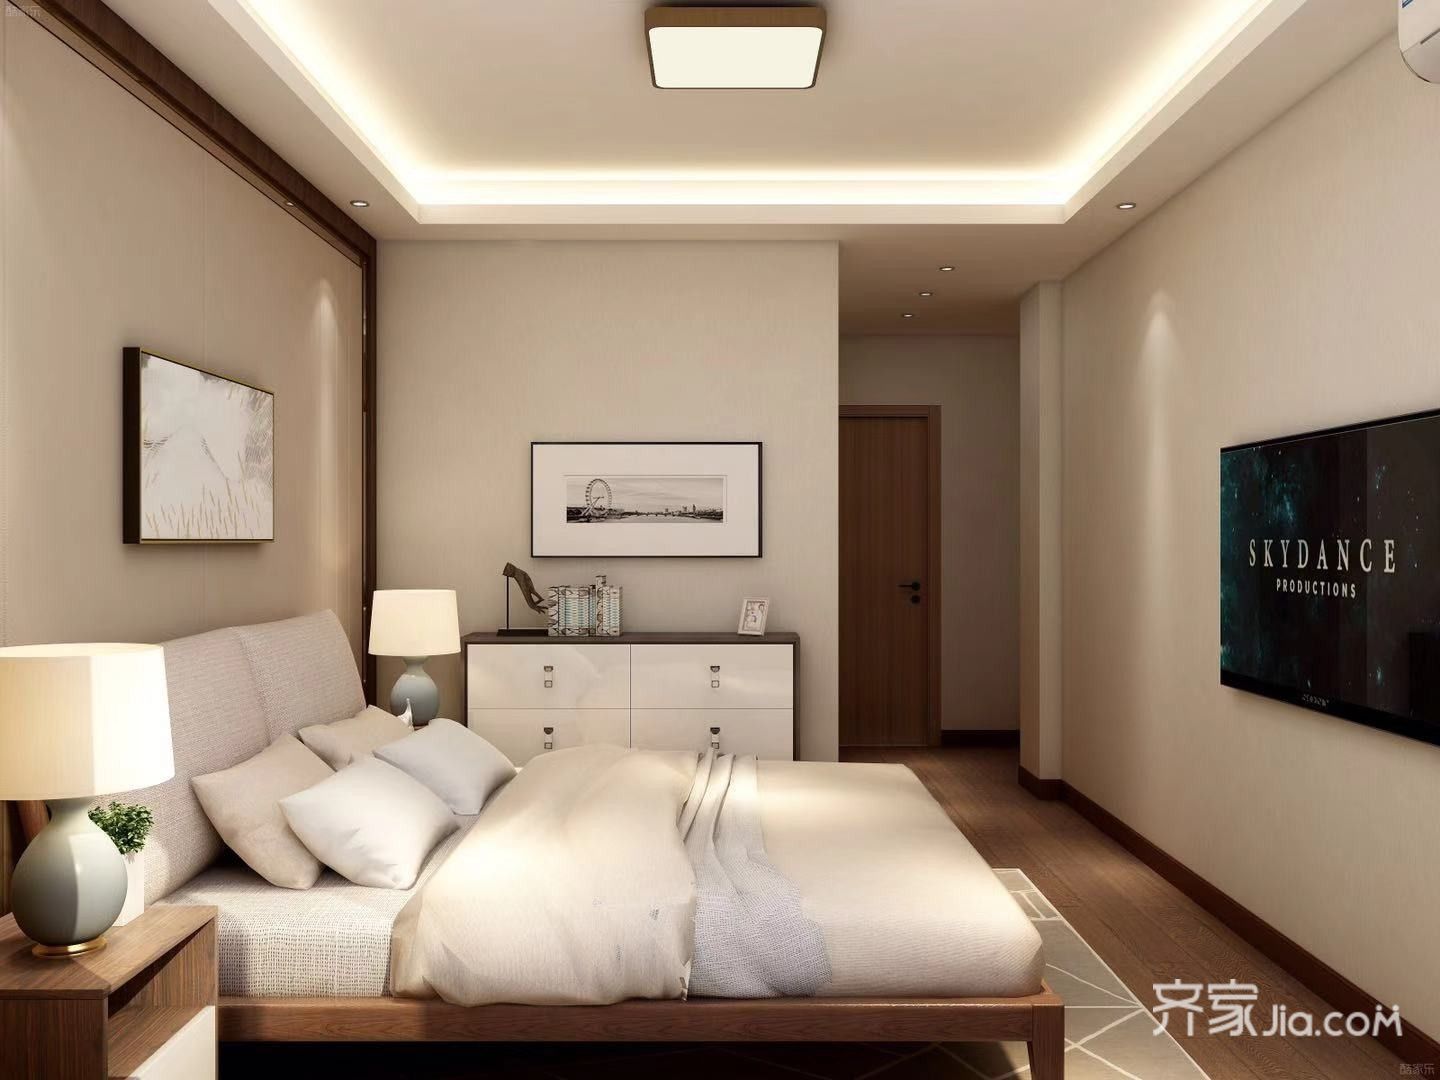 卧室以简洁为主,顶部走灯带和安装顶灯以满足不同的光线需求.